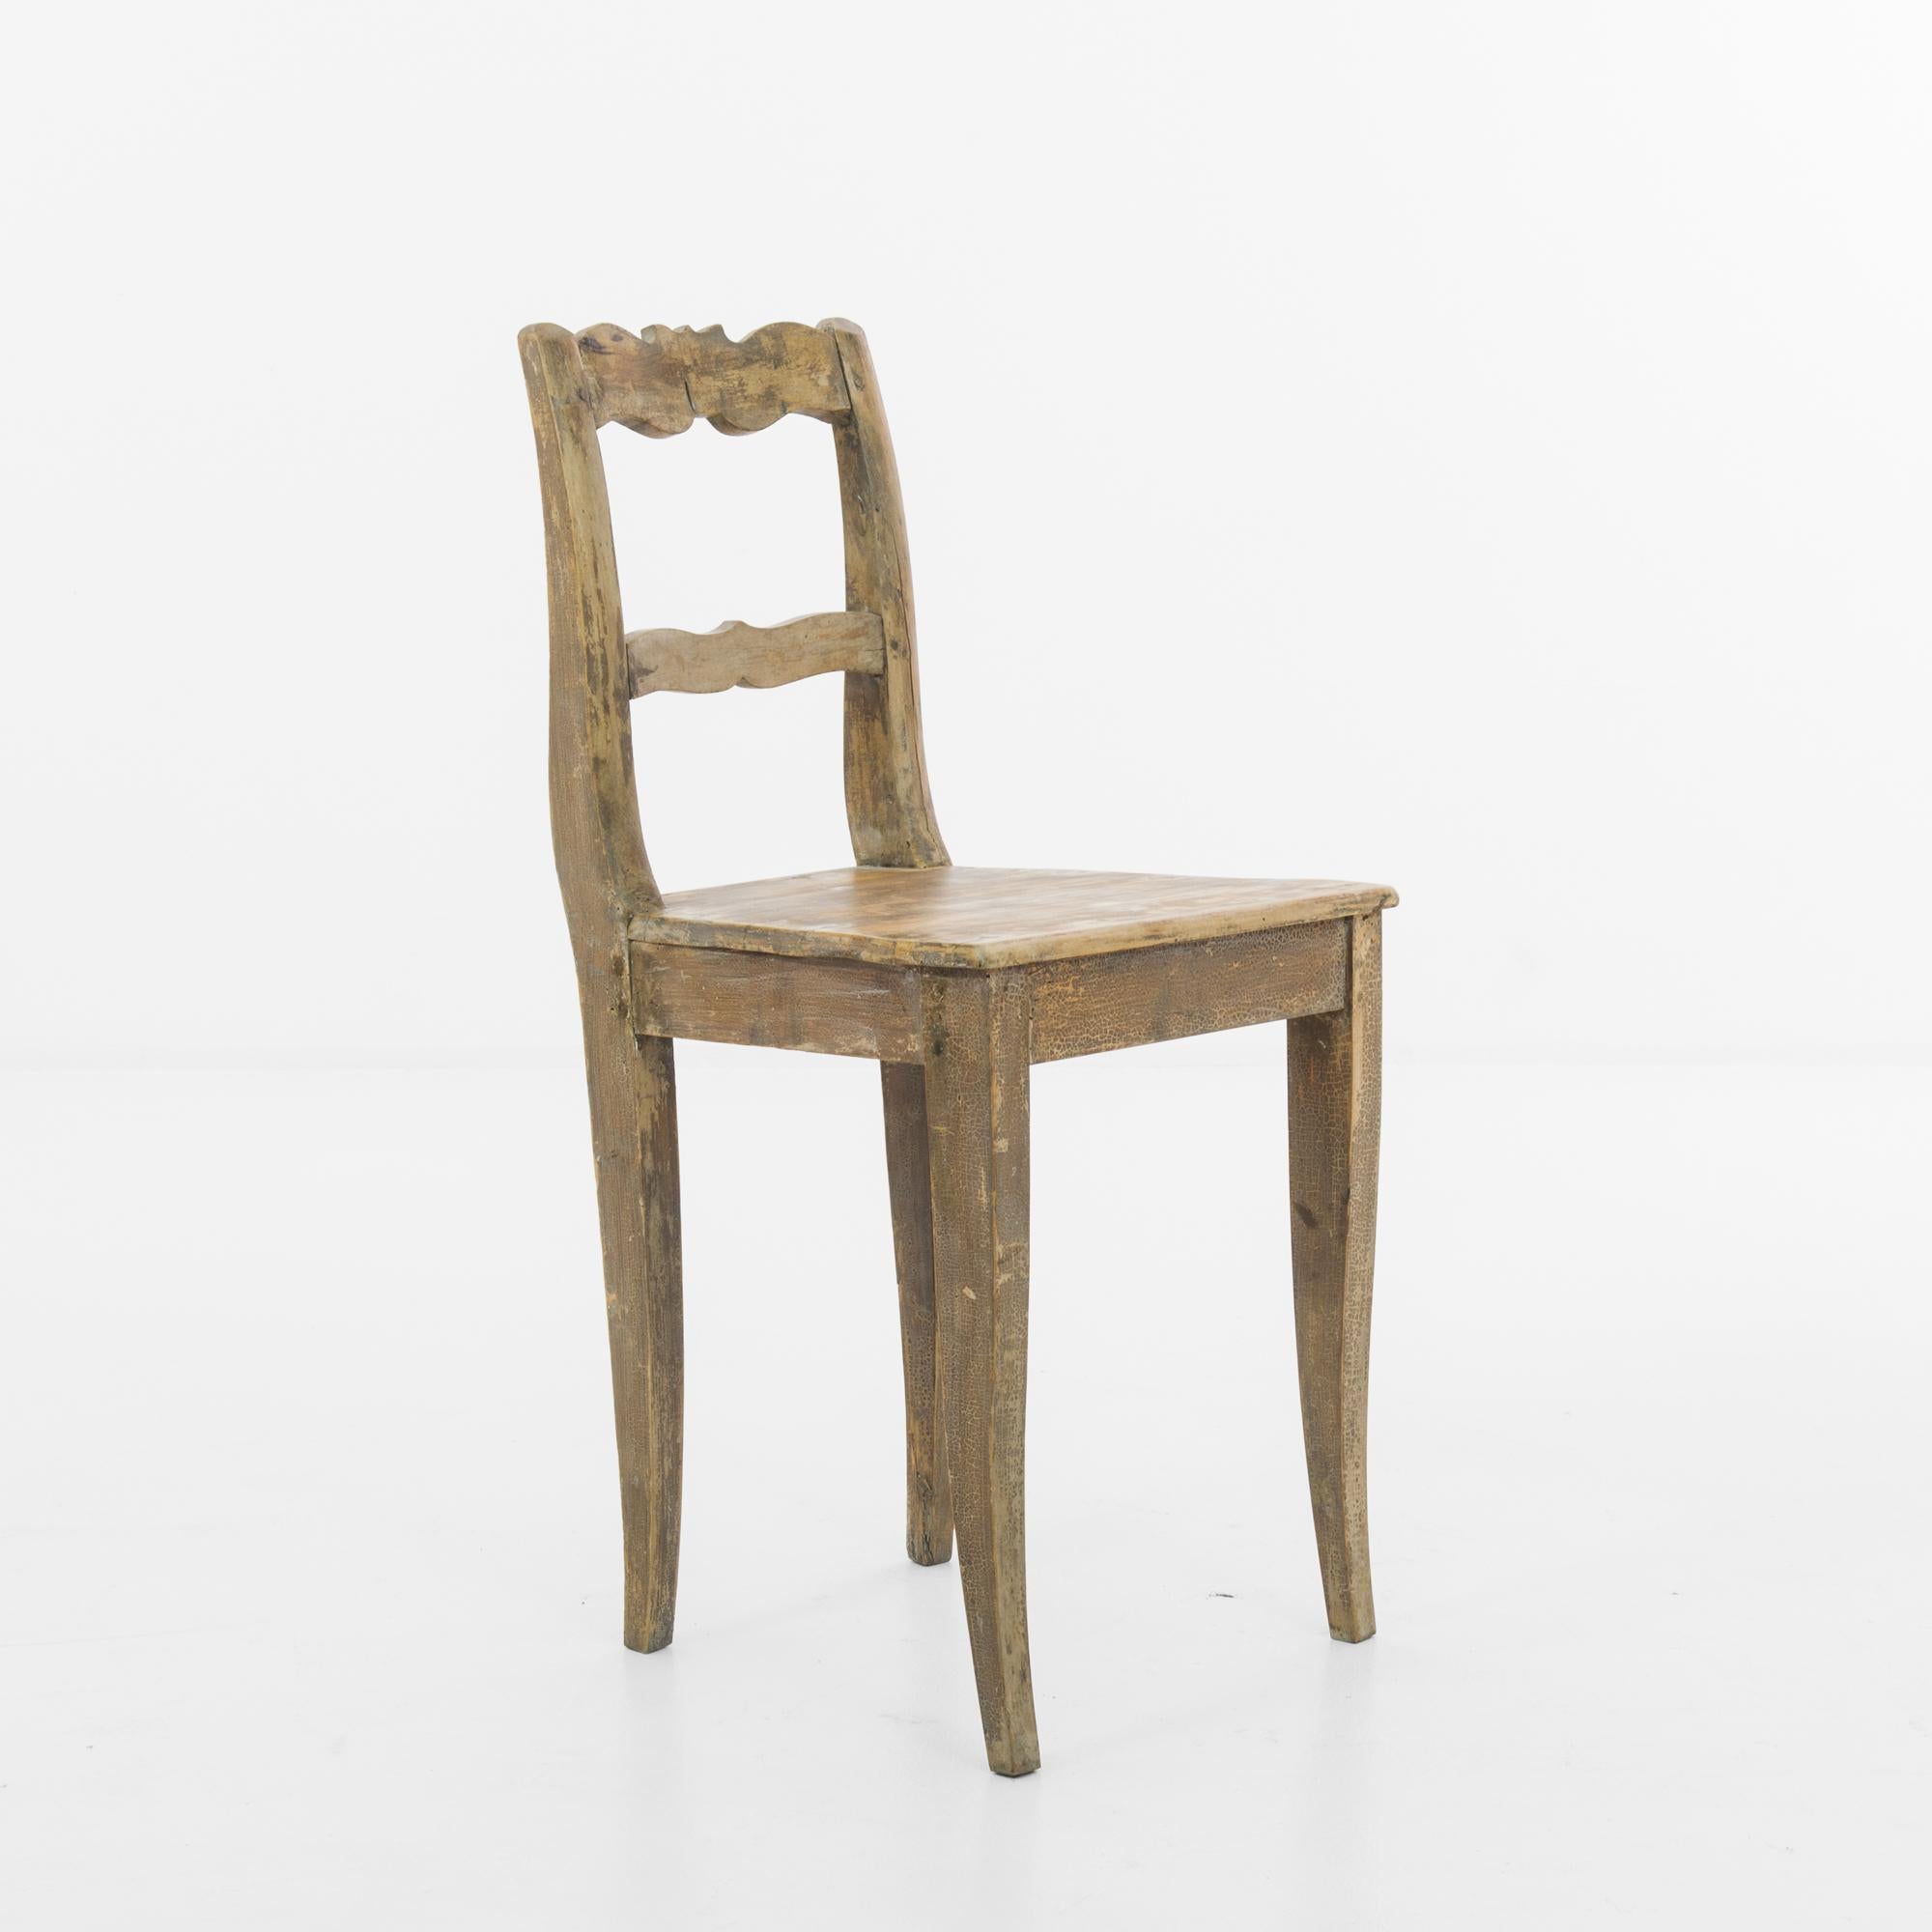 Fabriquée au début des années 1900, cette exquise chaise allemande en bois incarne l'élégance intemporelle et le superbe savoir-faire de l'époque. Taillée dans un bois fin et robuste, probablement du chêne ou du hêtre, cette chaise présente un